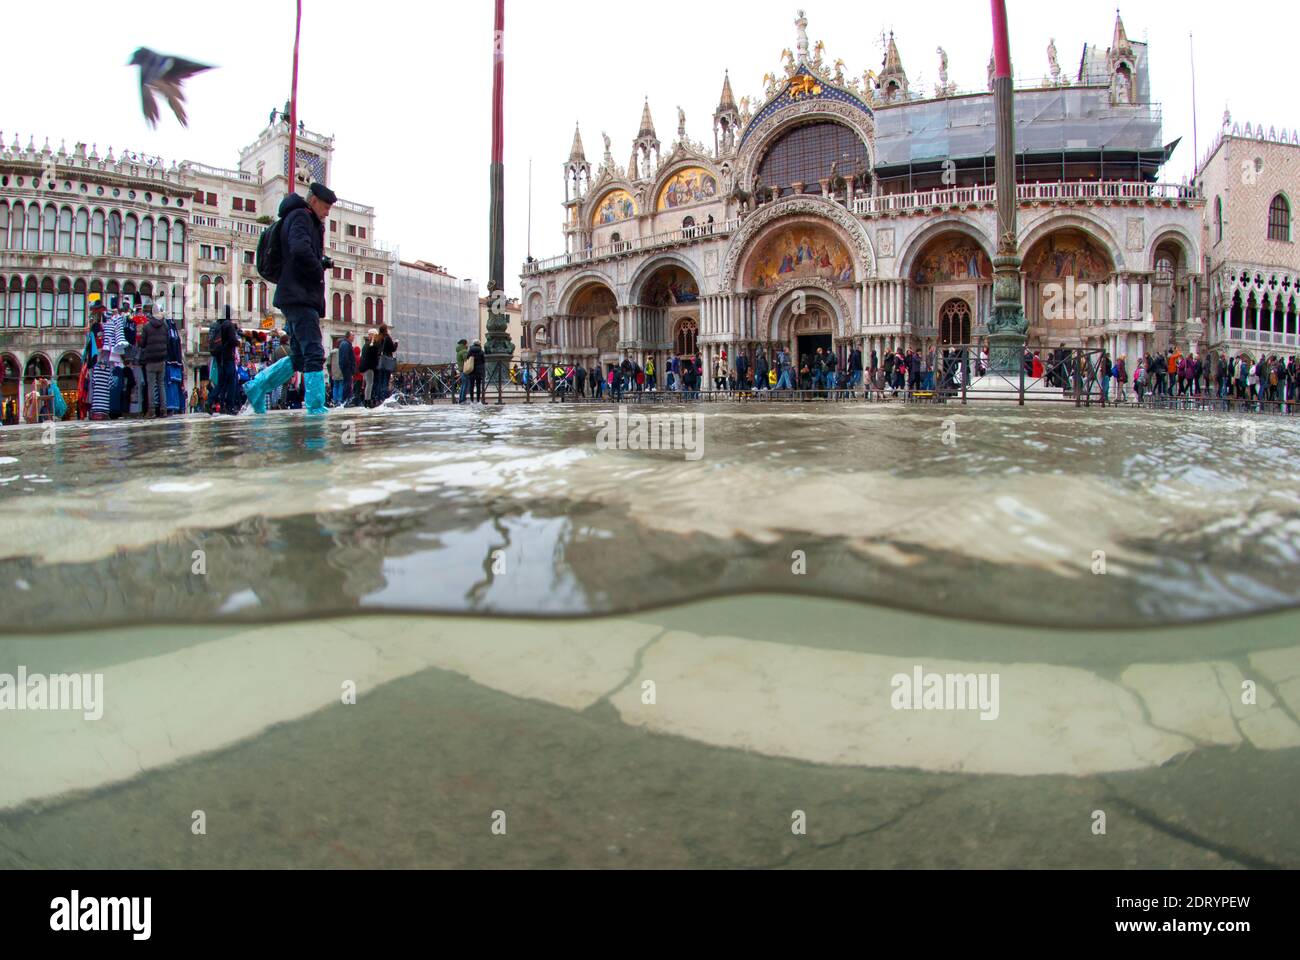 Foto submarina Plaza de San Marcos inundada por la marea alta con turistas caminando. Venecia, Italia Foto de stock